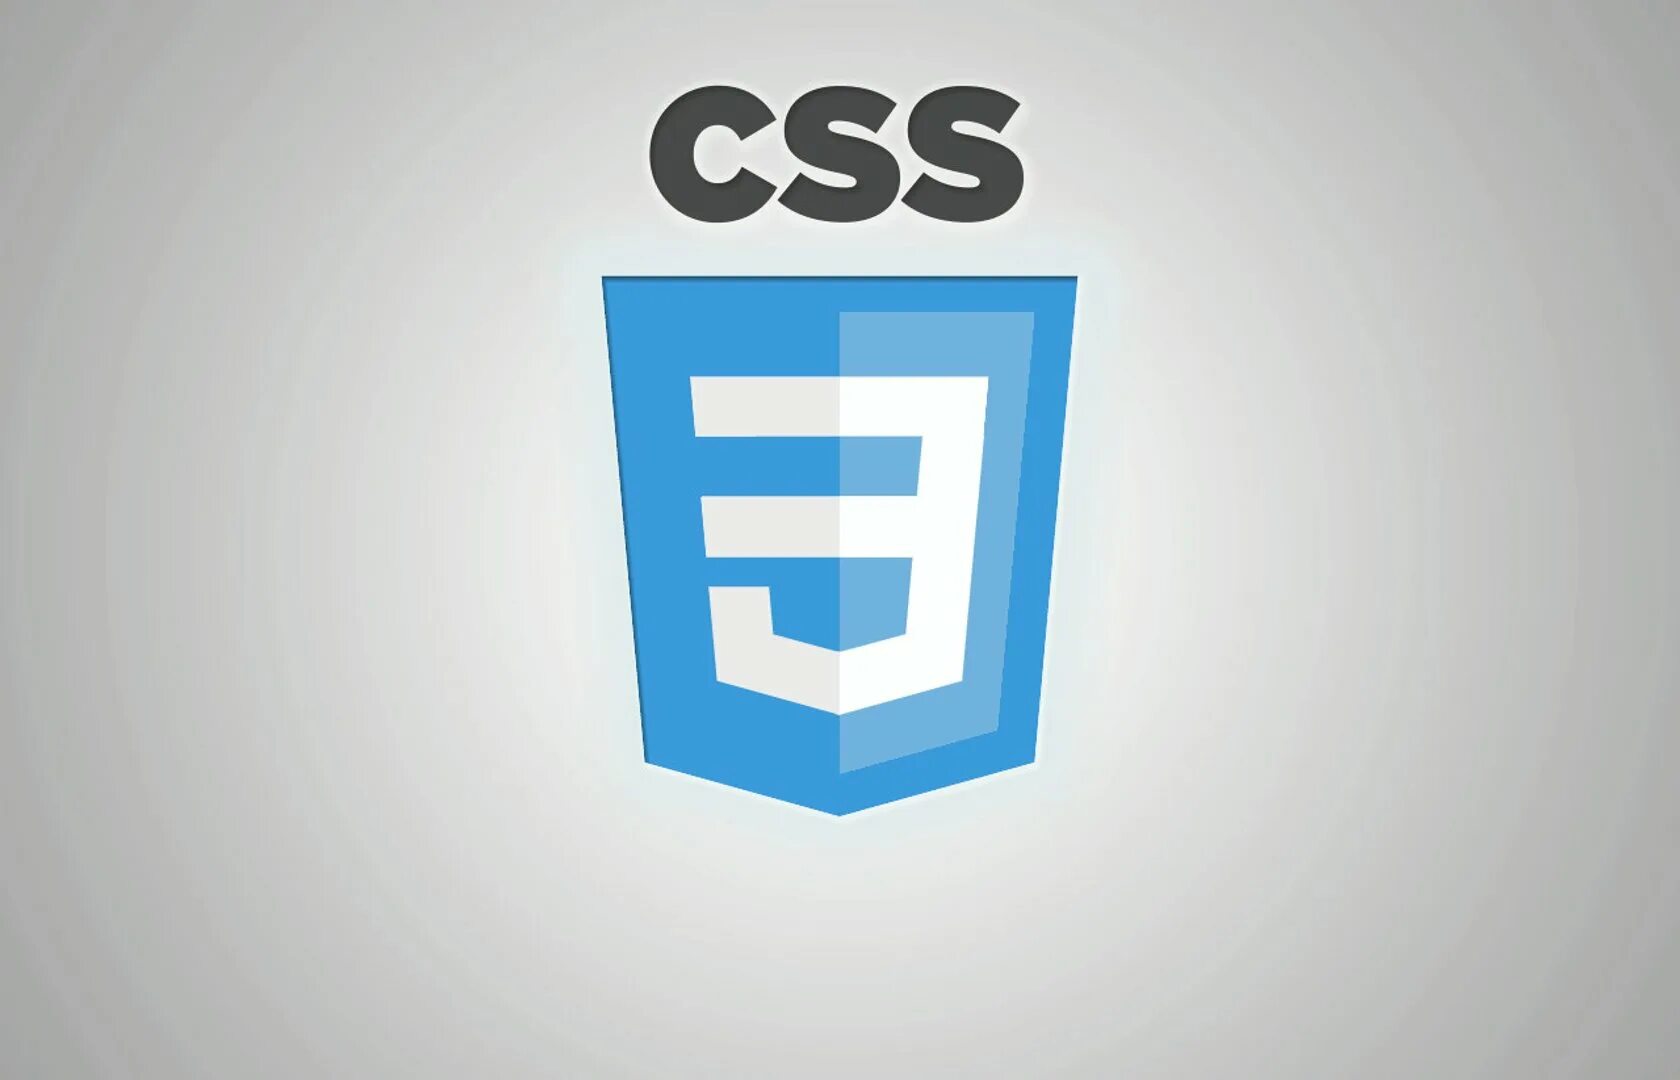 Html5 разработка. Css3 логотип. Значок css3. CSS эмблема. CSS лого.